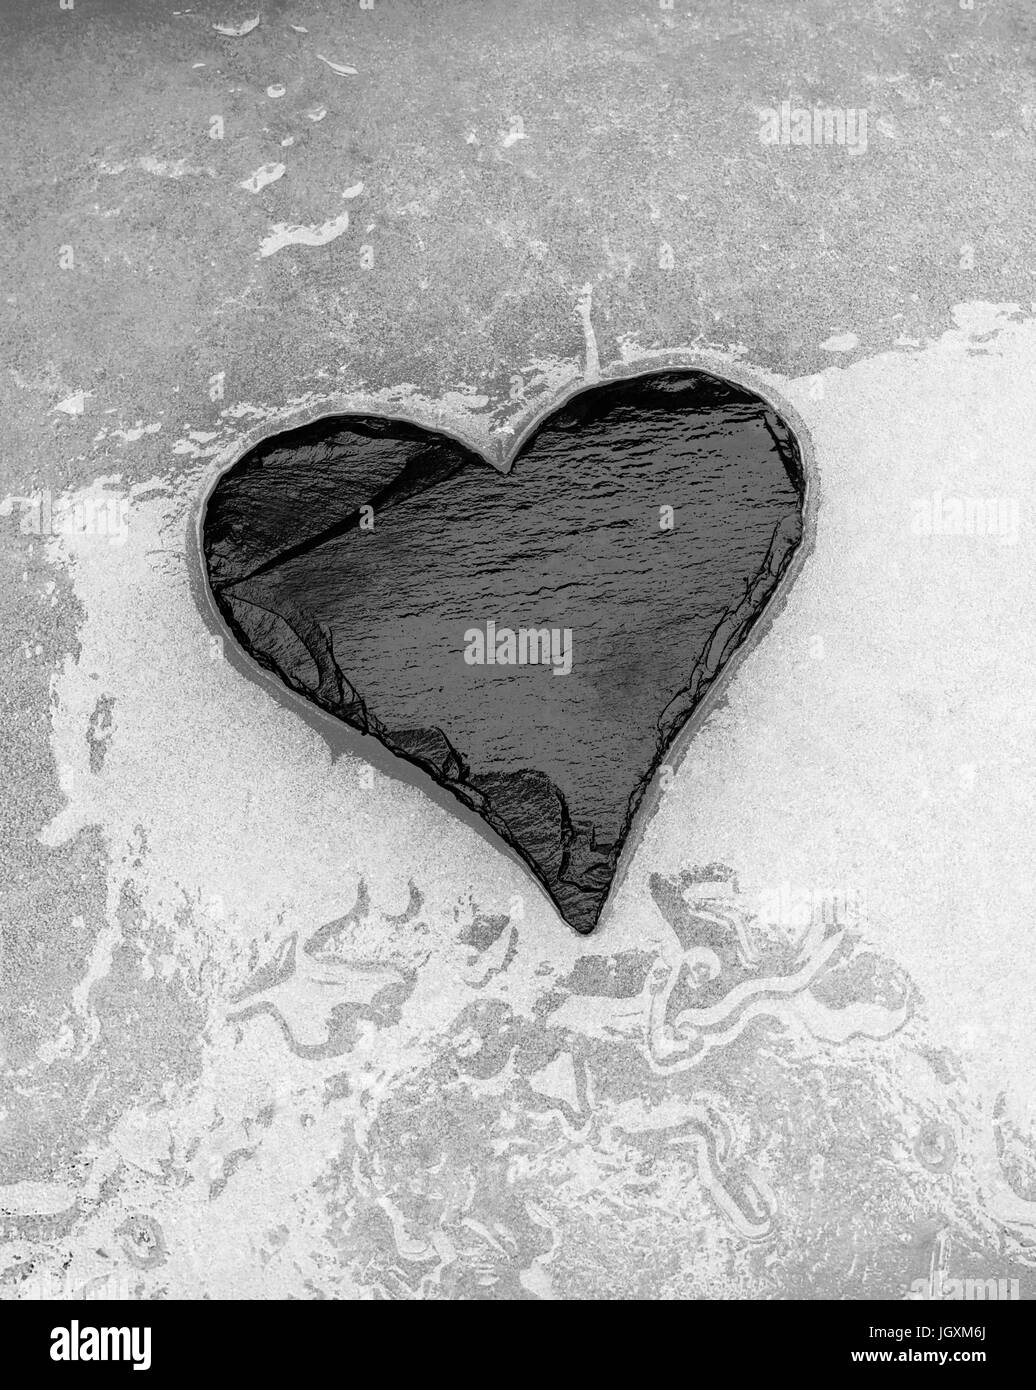 L'Ardoise coeur allongé sur la surface de la fonte des glaces Banque D'Images